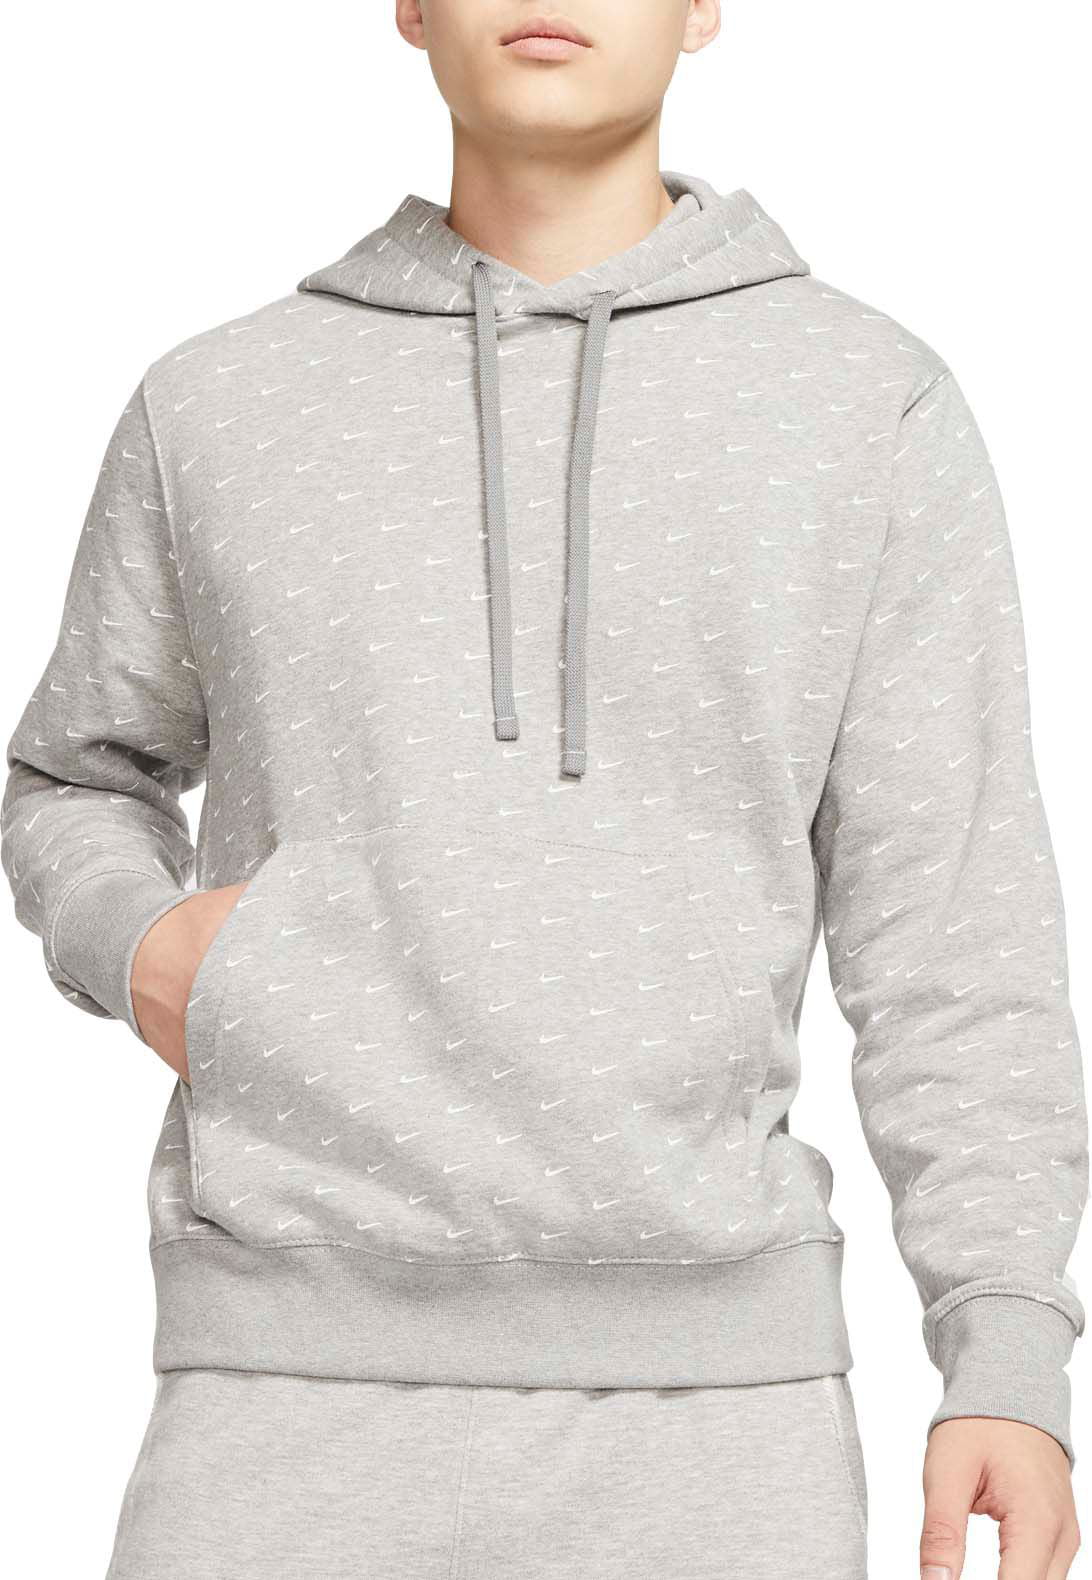 Buy > nike pullover swoosh hoodie > in stock